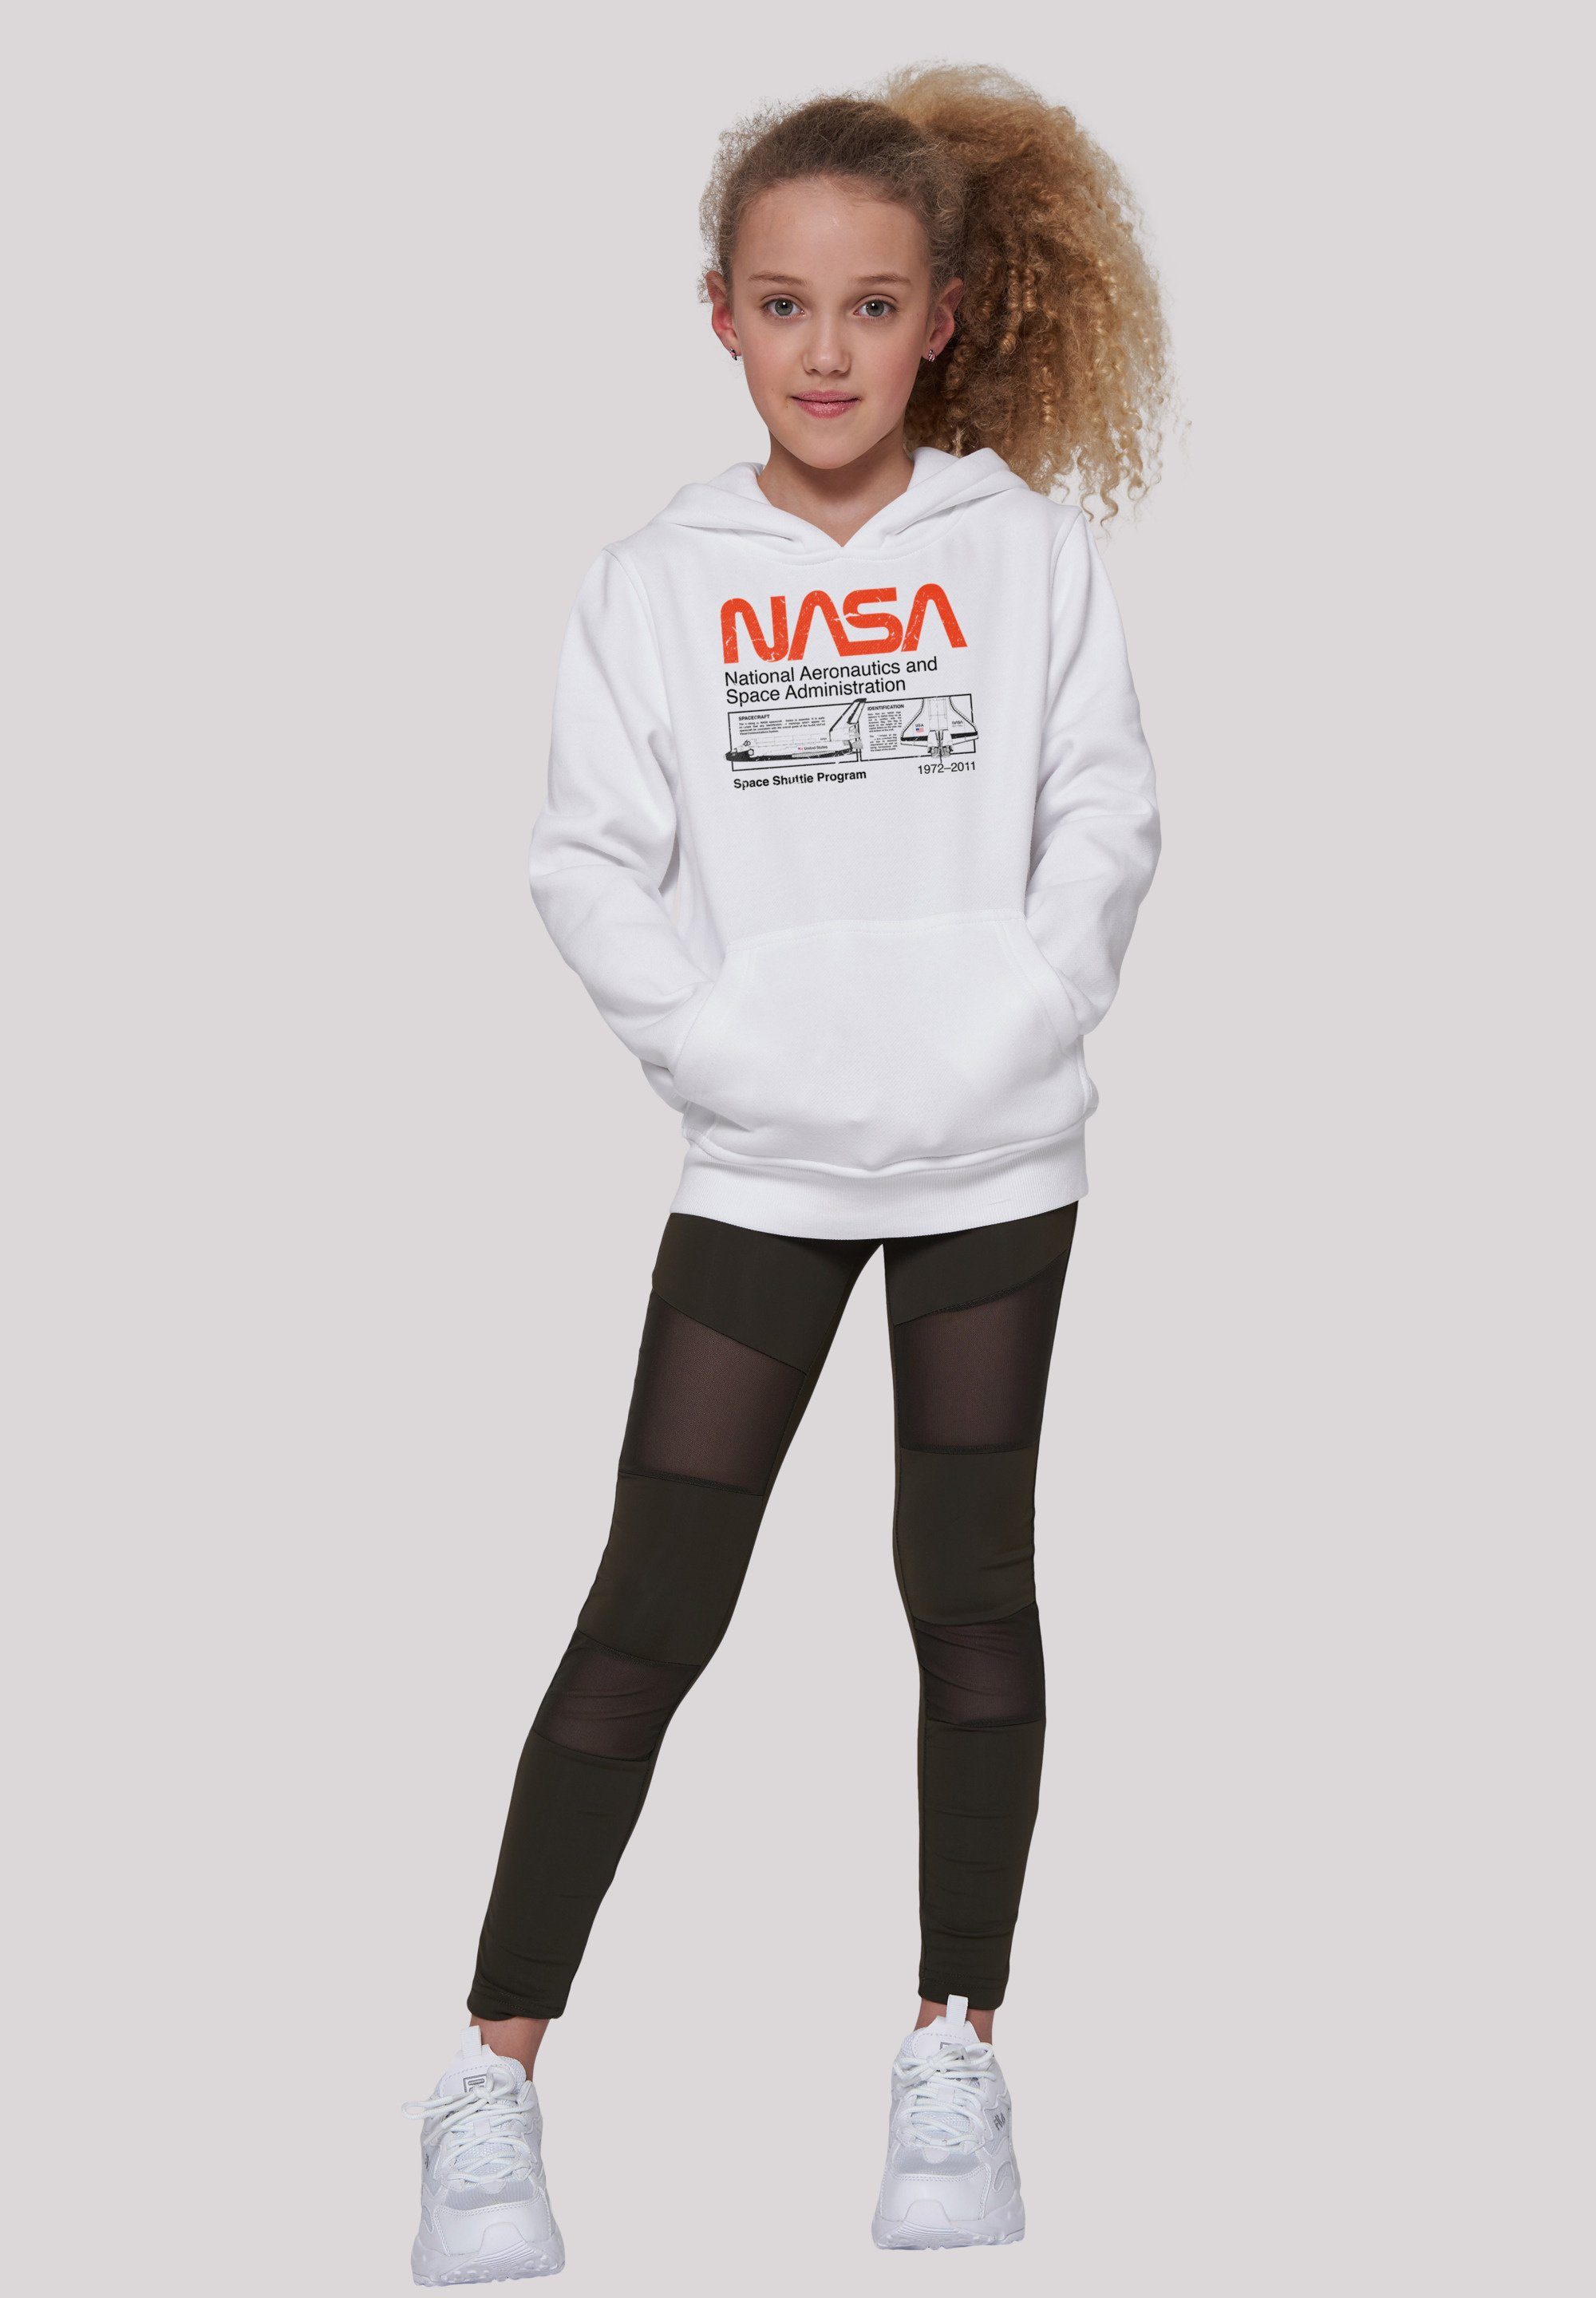 NASA Classic Shuttle White Sweatshirt Space Unisex F4NT4STIC Kinder,Premium Merch,Jungen,Mädchen,Bedruckt